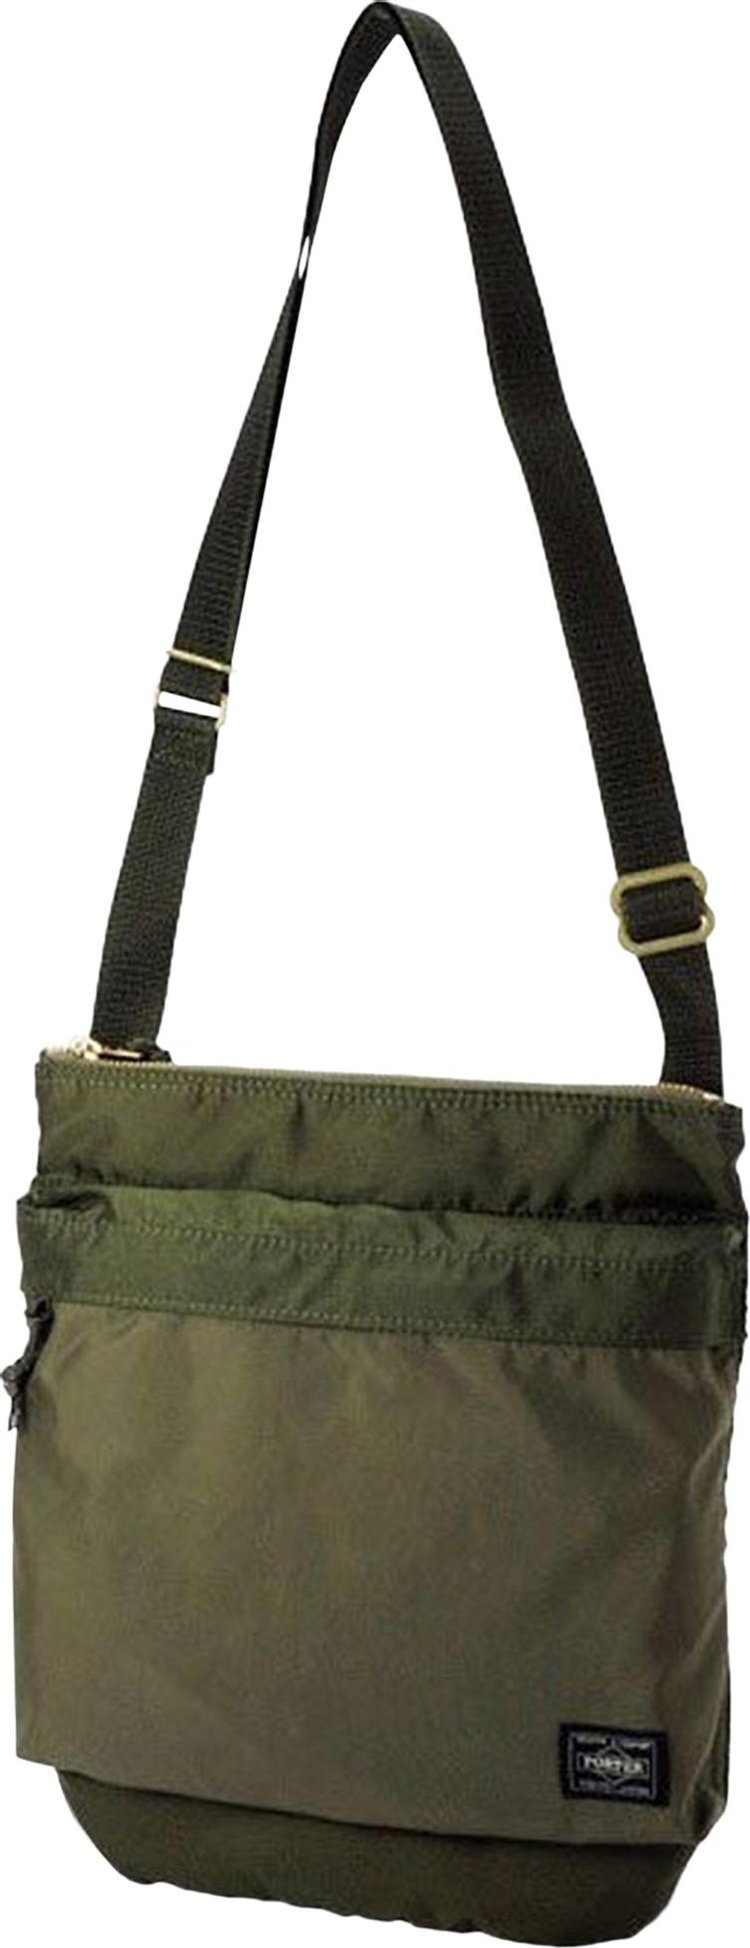 Porter-Yoshida & Co. Force Shoulder Bag 'Olive Drab'